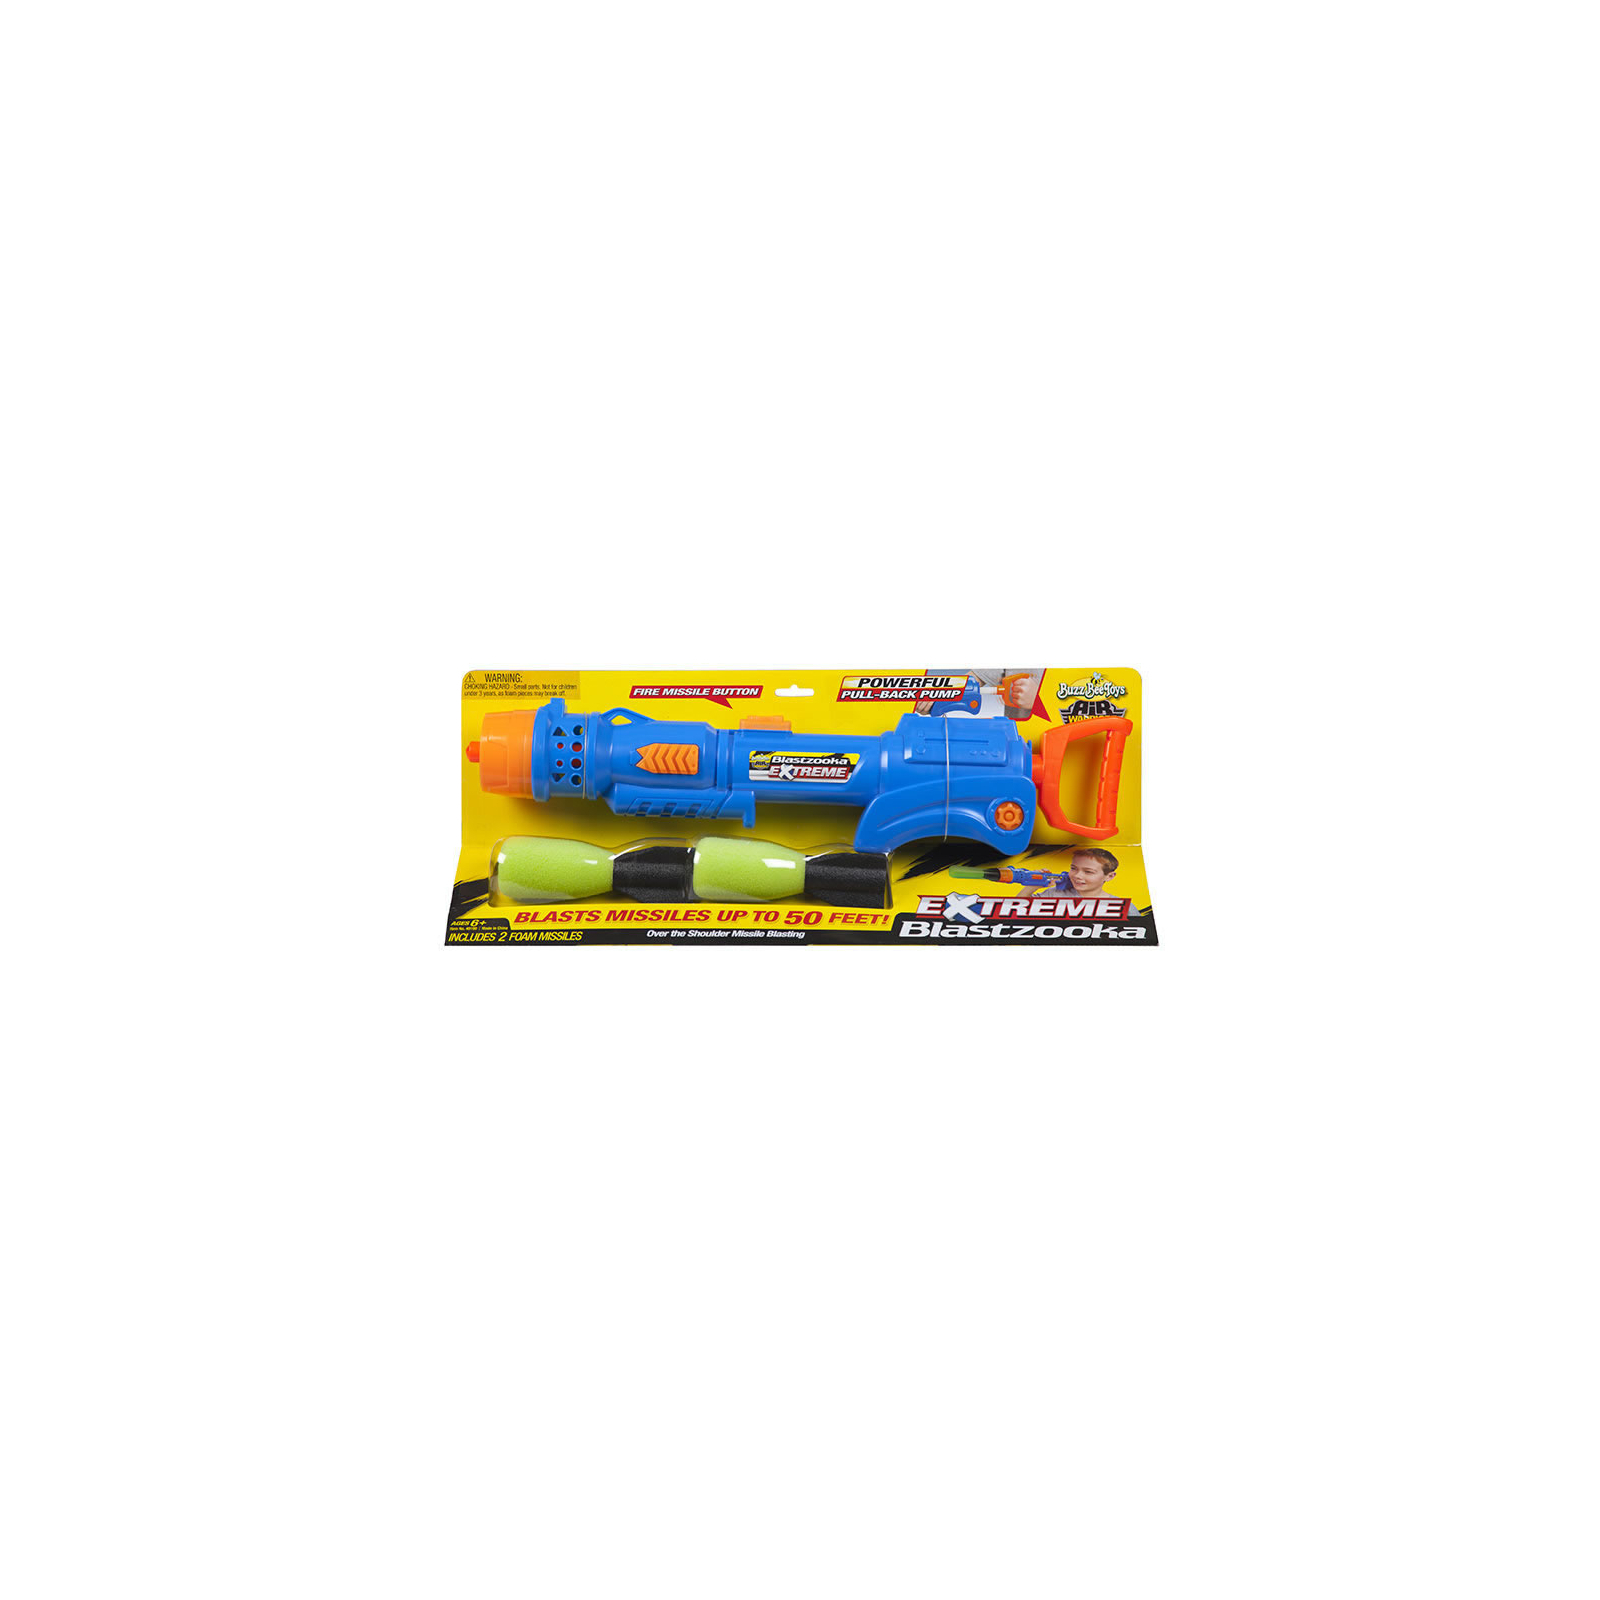 Игрушечное оружие BuzzBeeToys Extreme Blastzooka (40103)